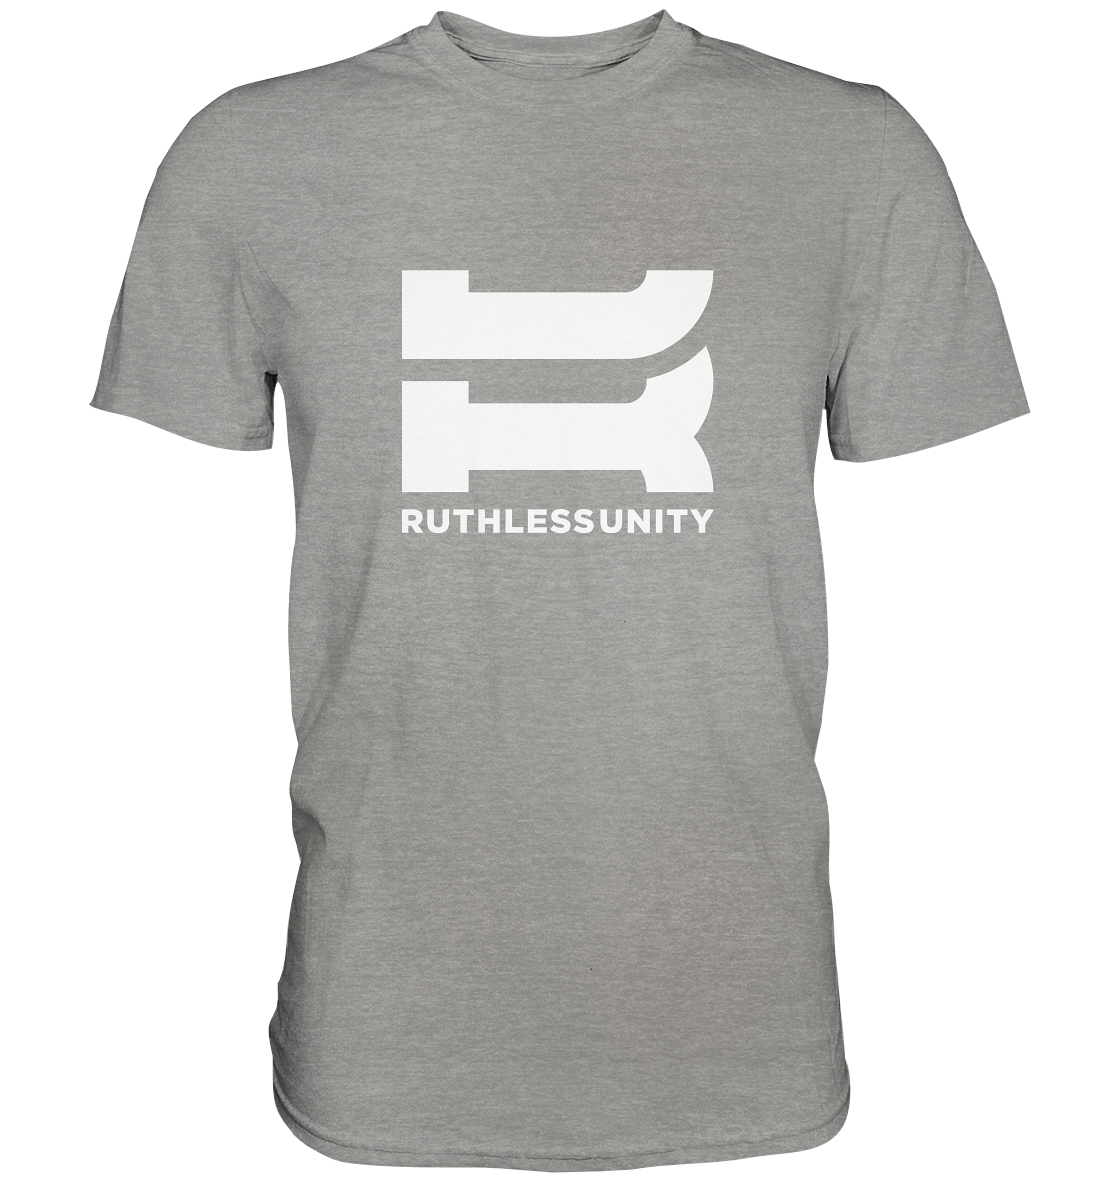 RUTHLESS UNITY - Basic Shirt